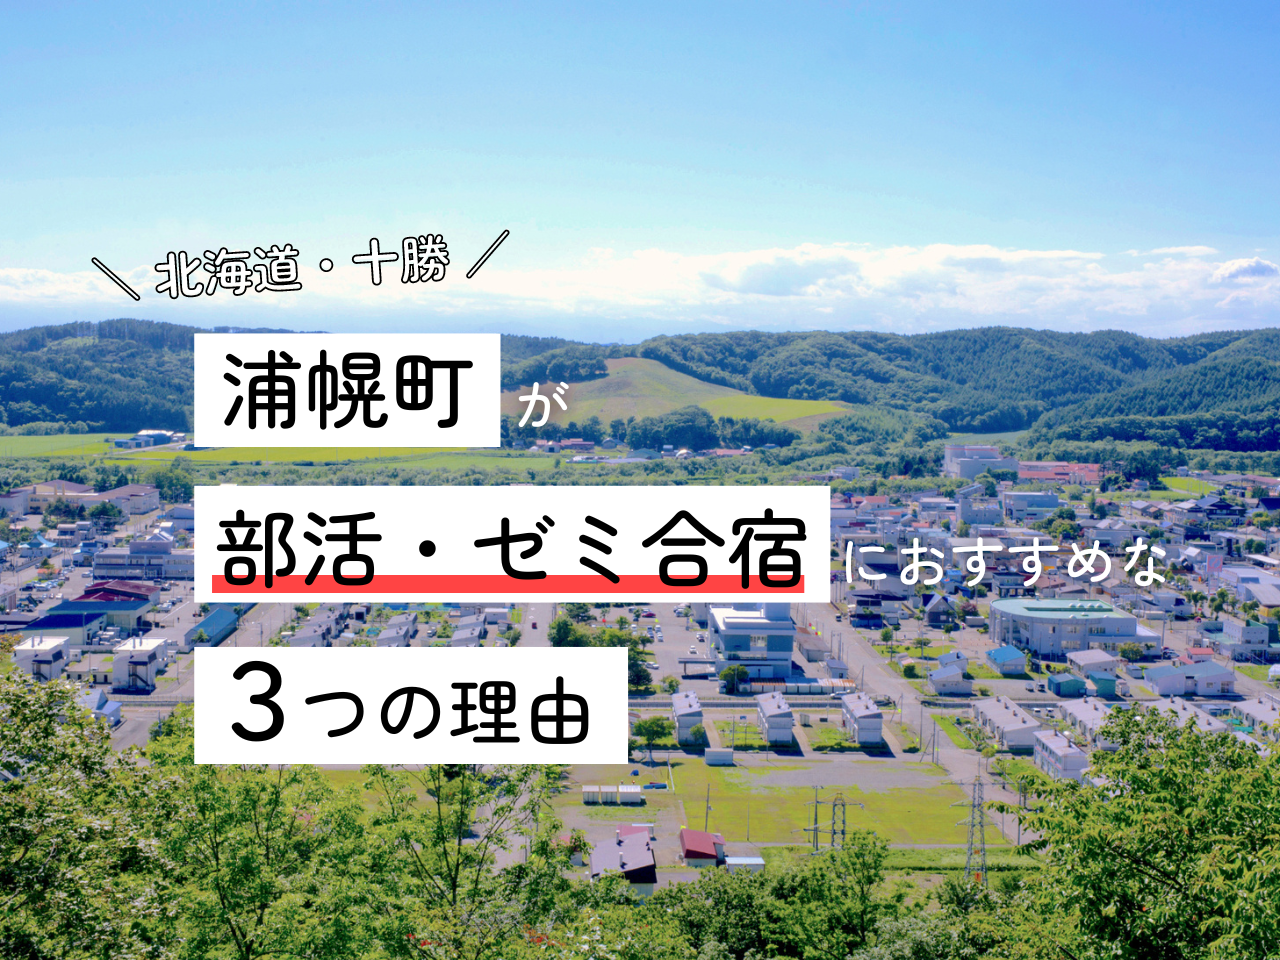 北海道・浦幌町が、部活・ゼミ合宿におすすめな理由